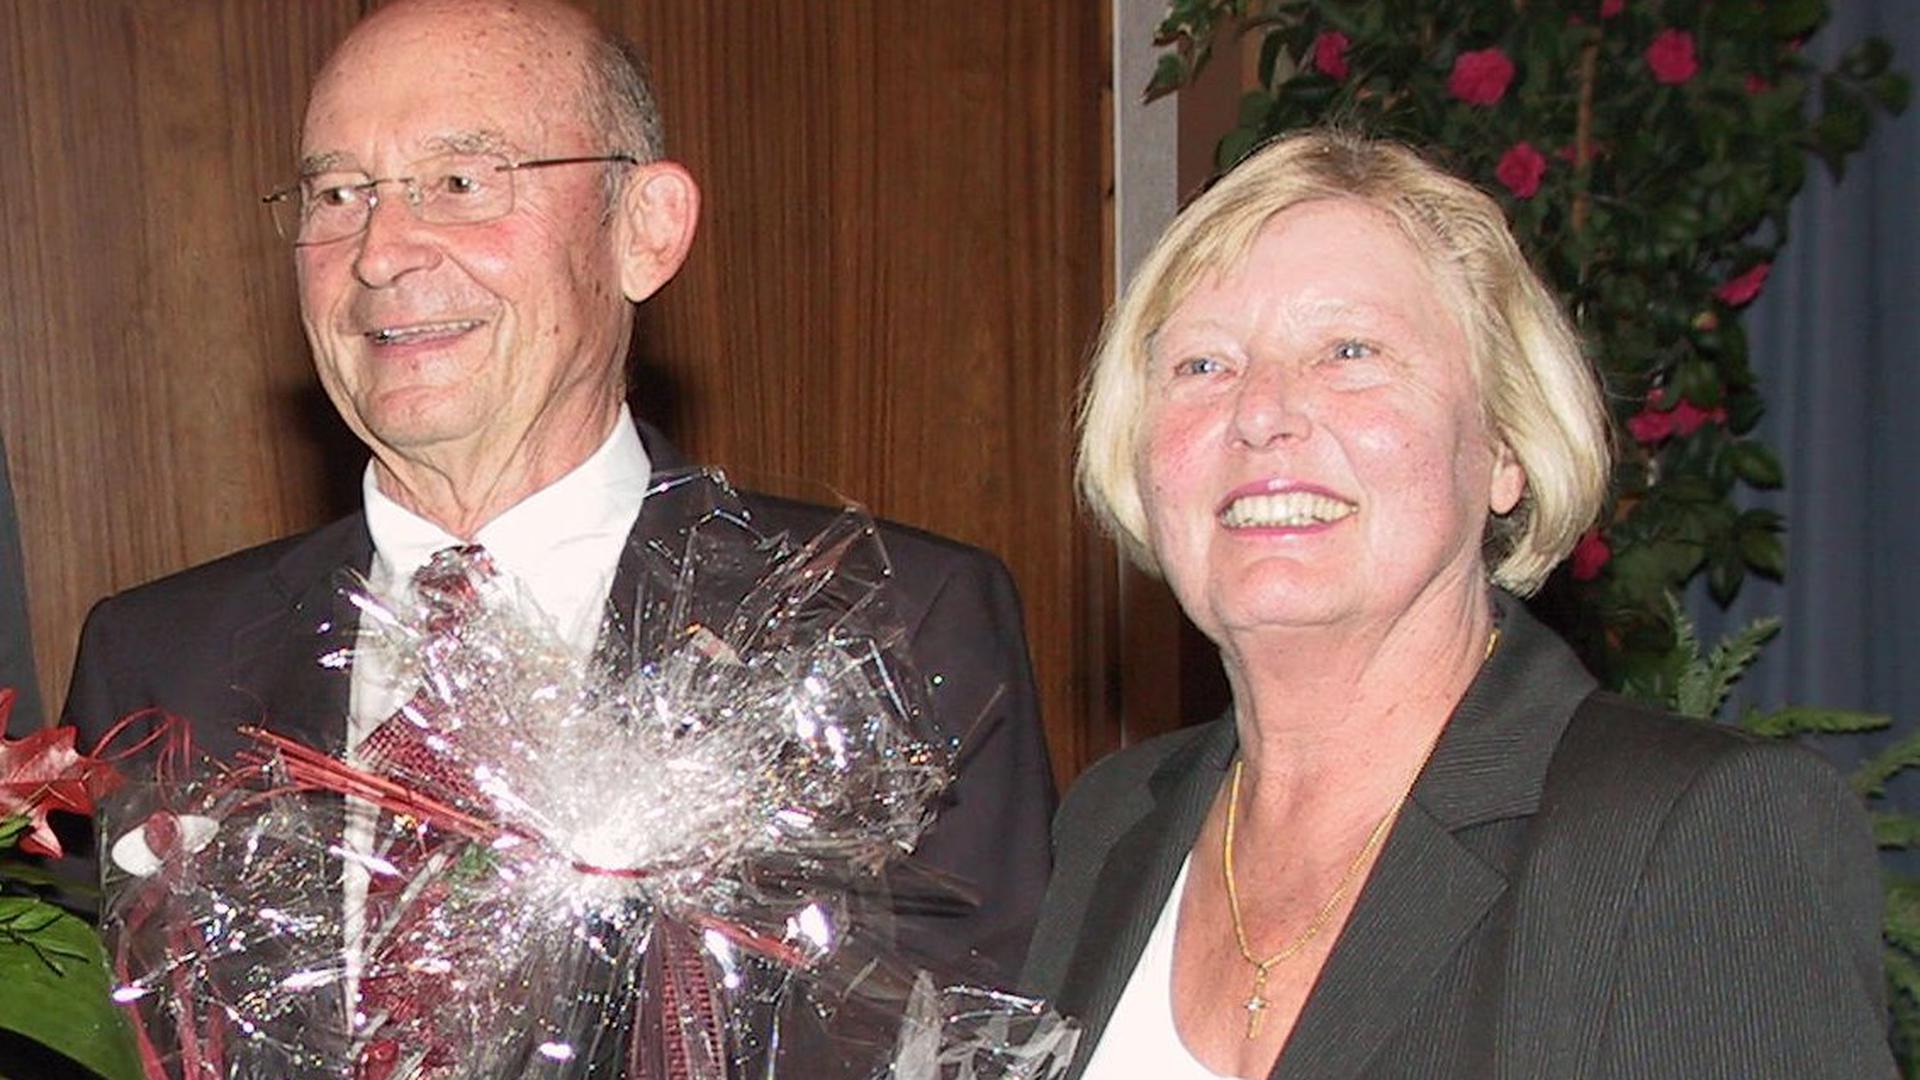 Ein Vorbild: Gerhard Westenberger war auch nach vielen Jahren als Bürgermeister in Dobel beliebt und geschätzt. Hier mit seiner Frau Sigrid bei der Dankesfeier zu seinem 75. Geburtstag.